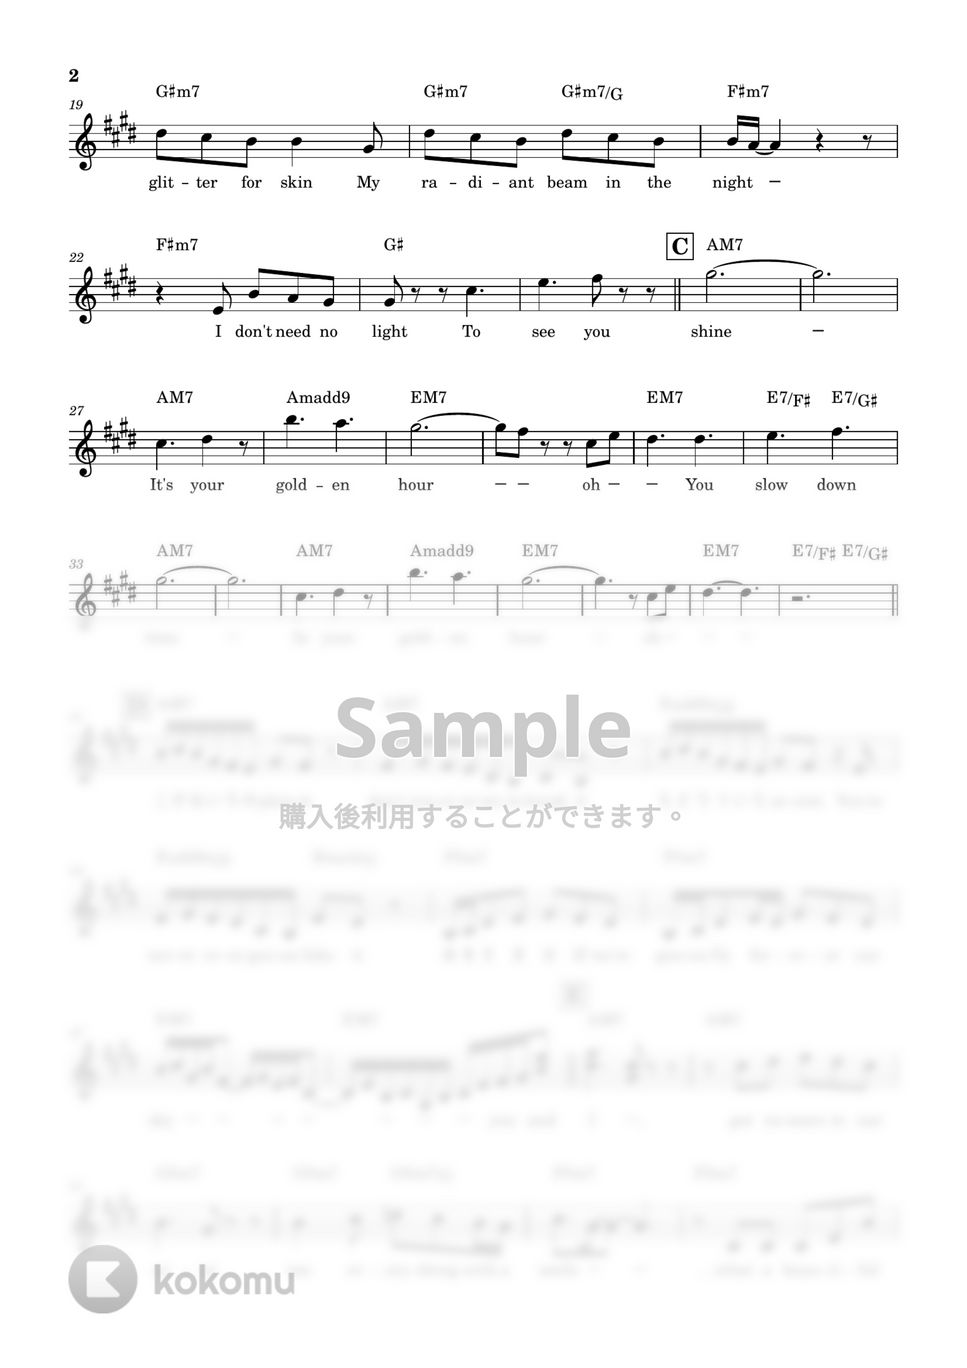 JVKE - golden hour (Fujii Kaze Remix/メロディ譜/歌詞付き/コード付き) by reo piano